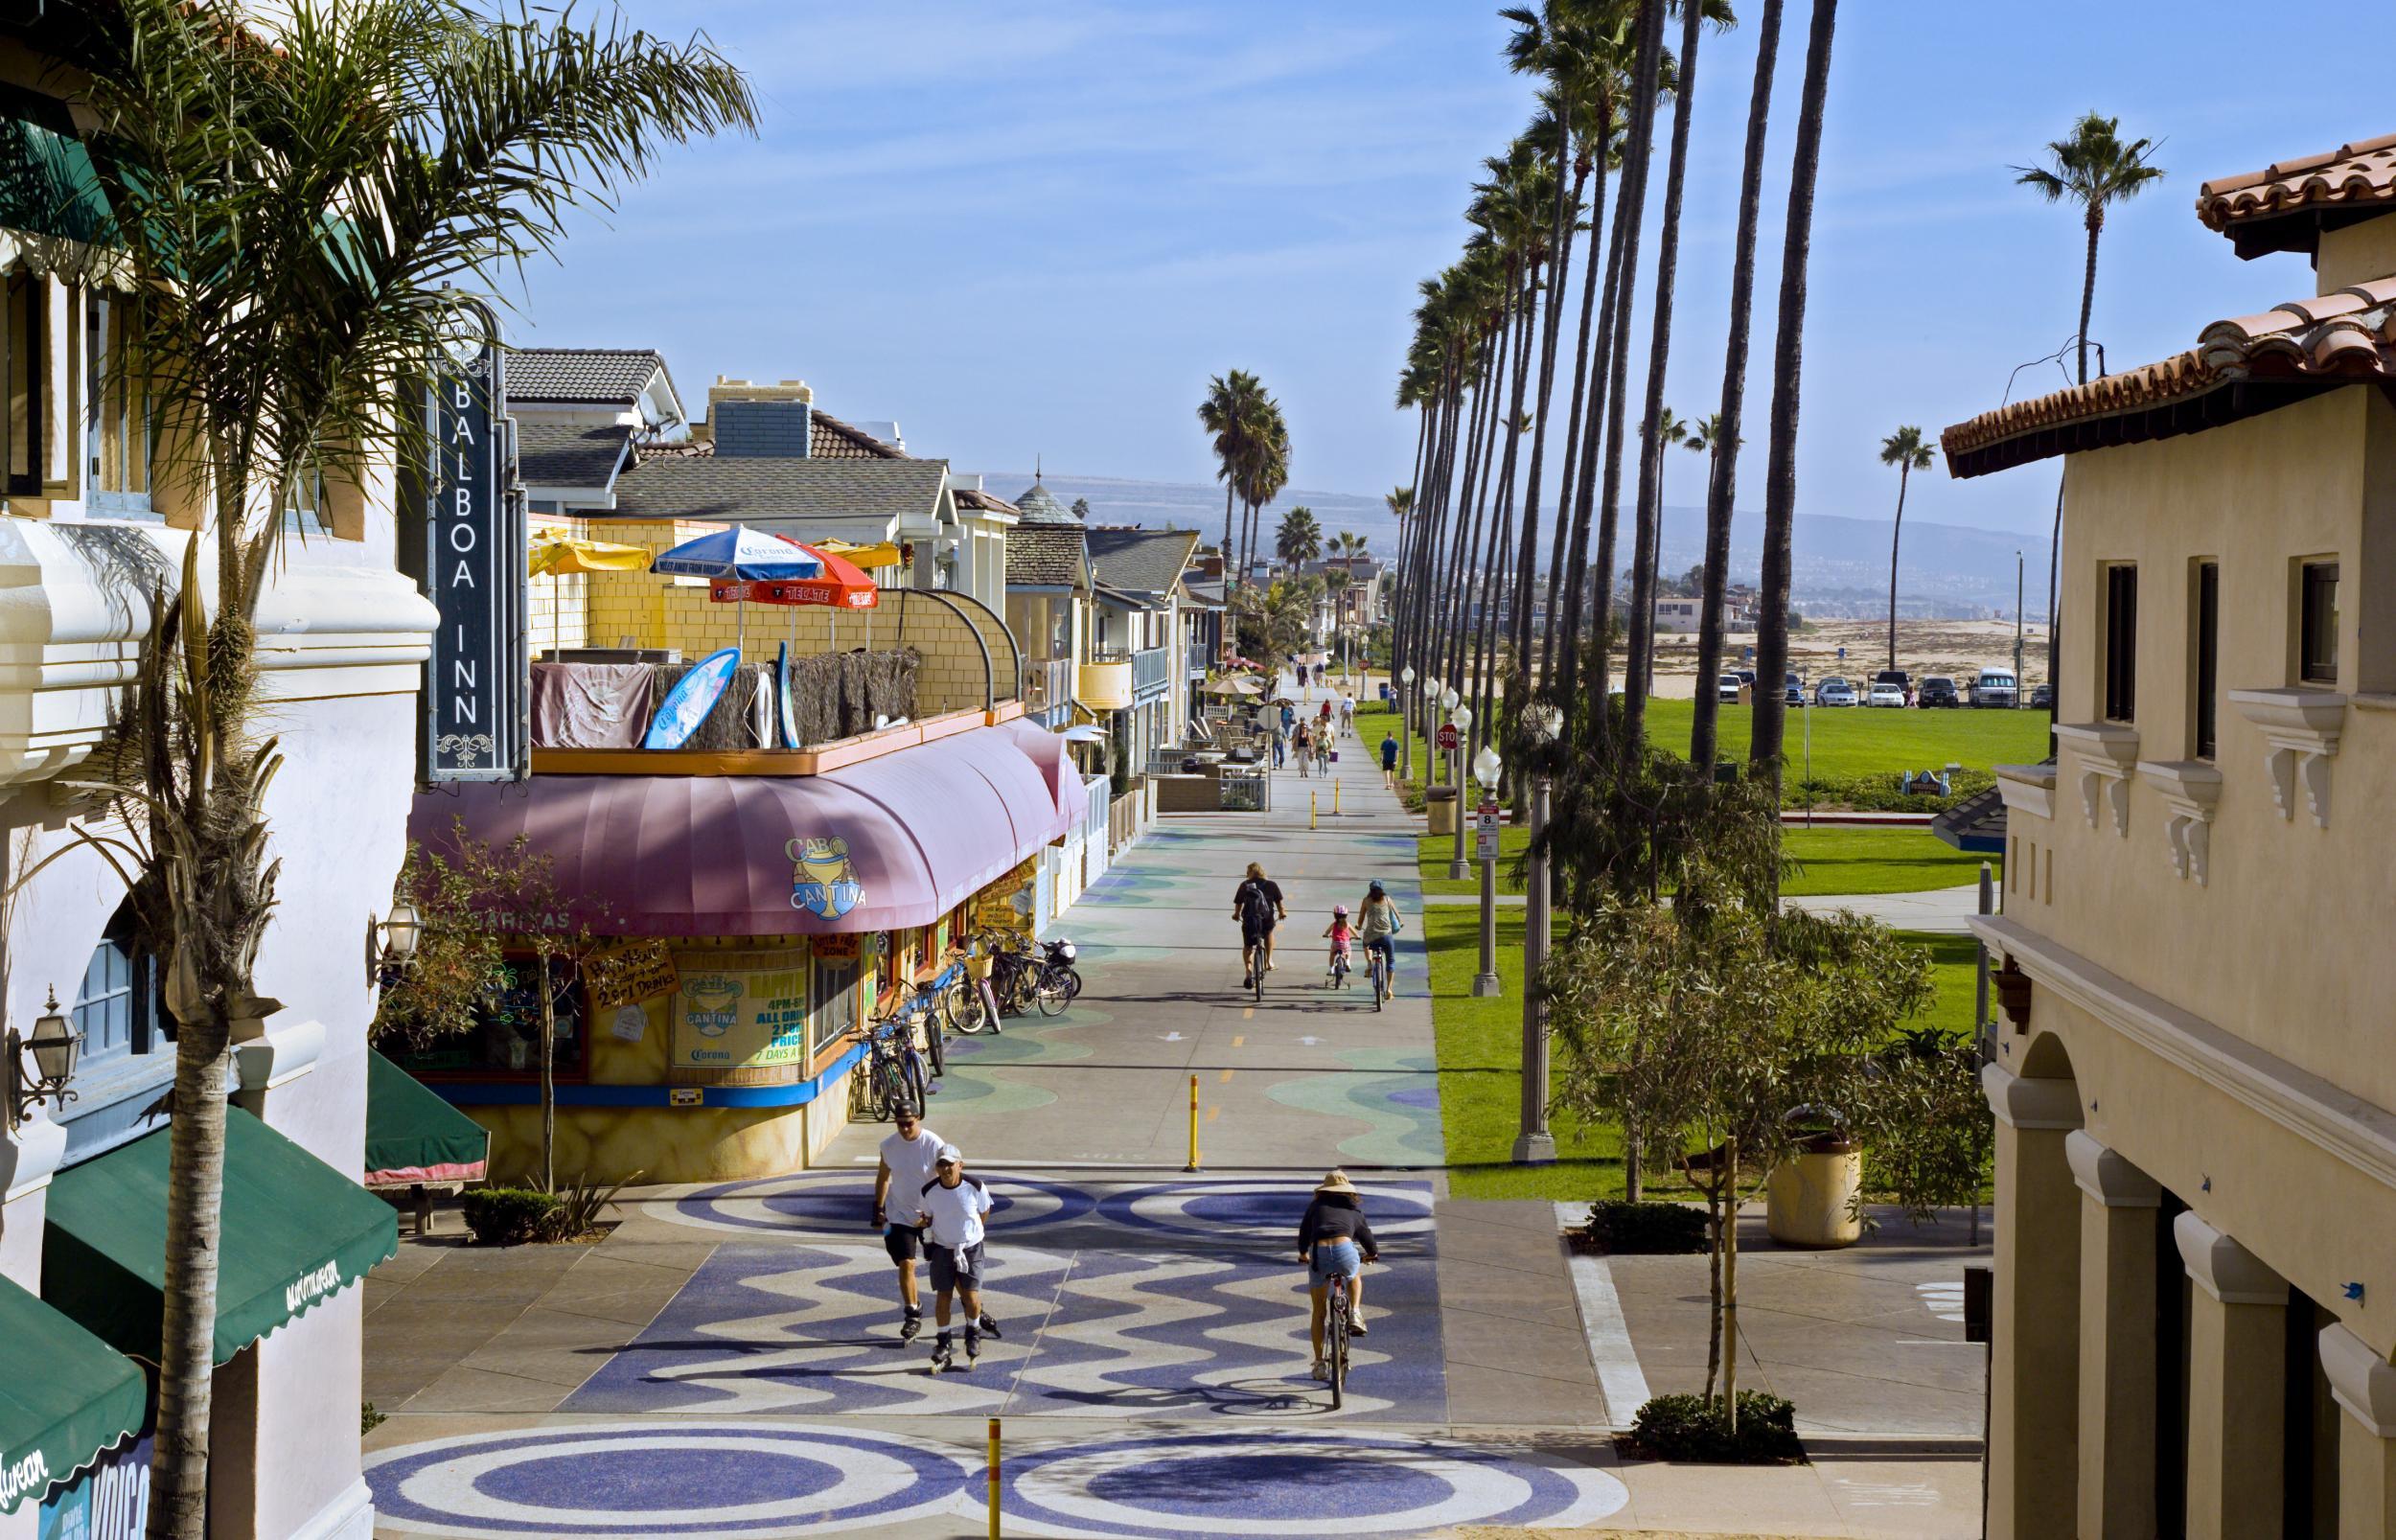 The Balboa Peninsula boardwalk